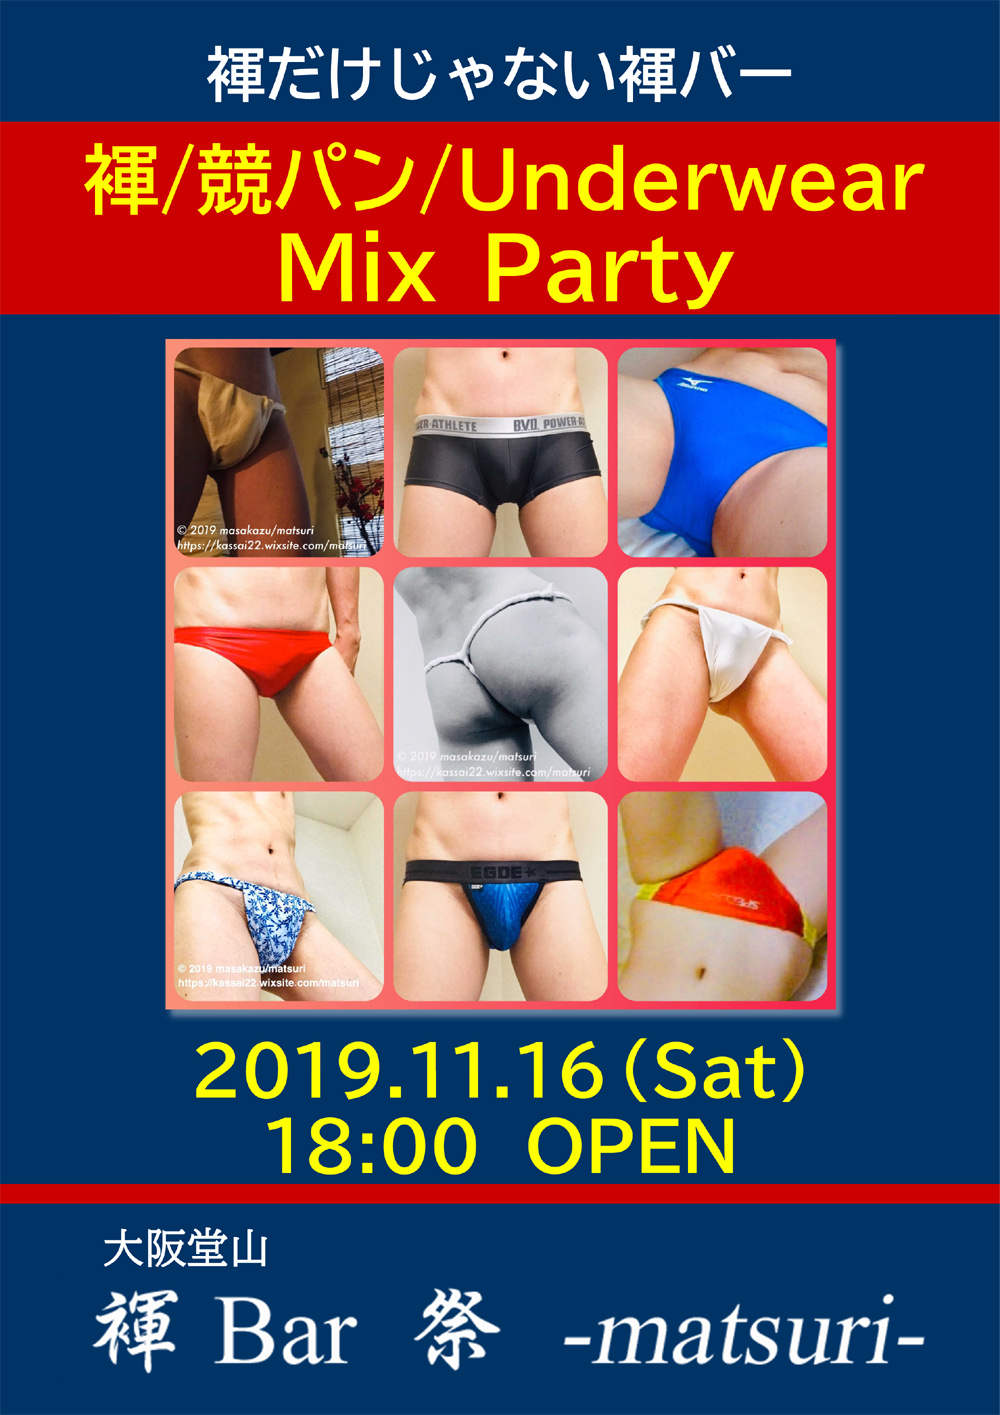 褌/競パン/Underwear Mix Day